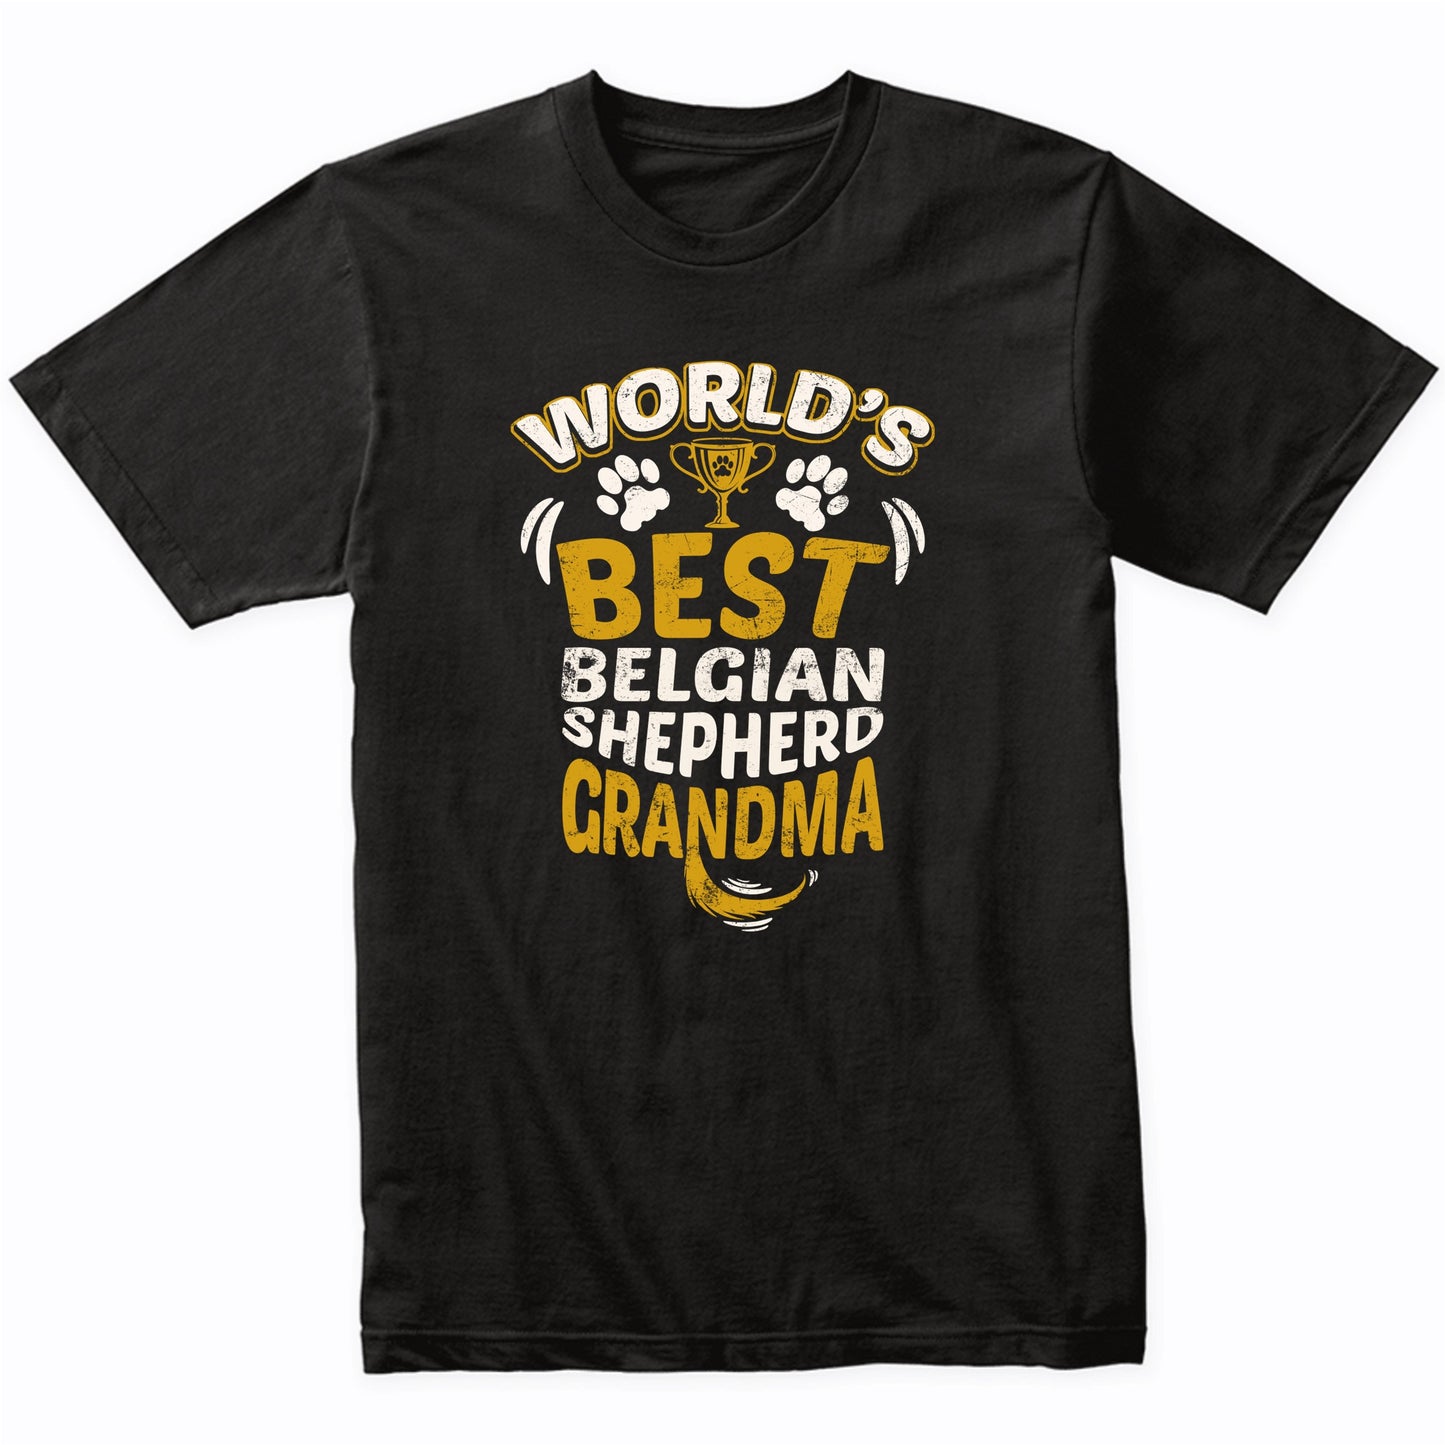 World's Best Belgian Shepherd Grandma Graphic T-Shirt